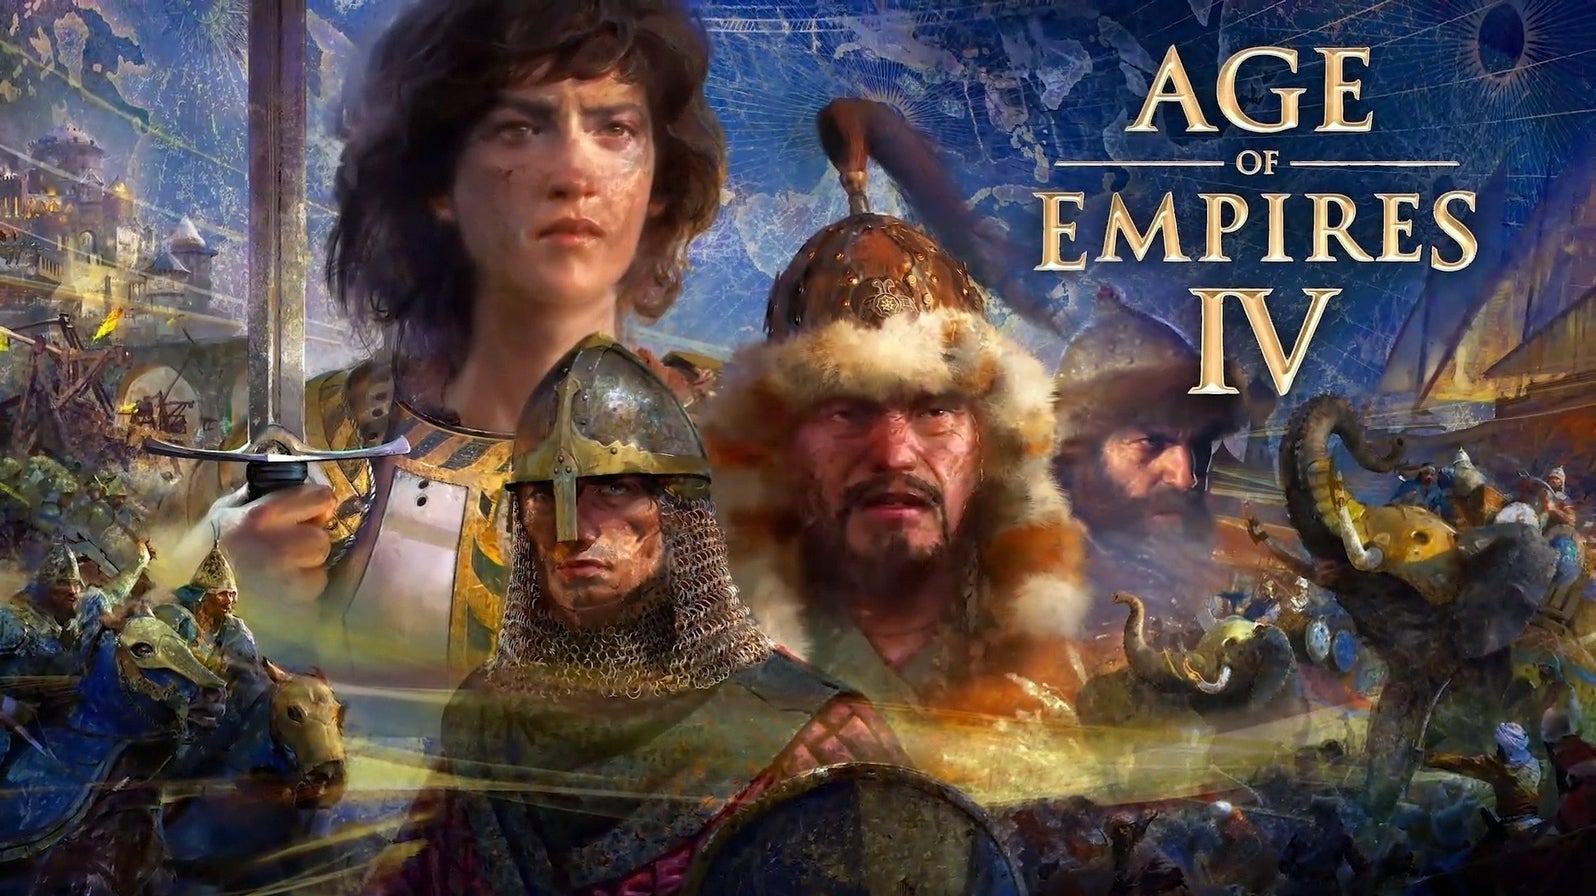 Bilder zu Age of Empires 4 erscheint am 28. Oktober 2021